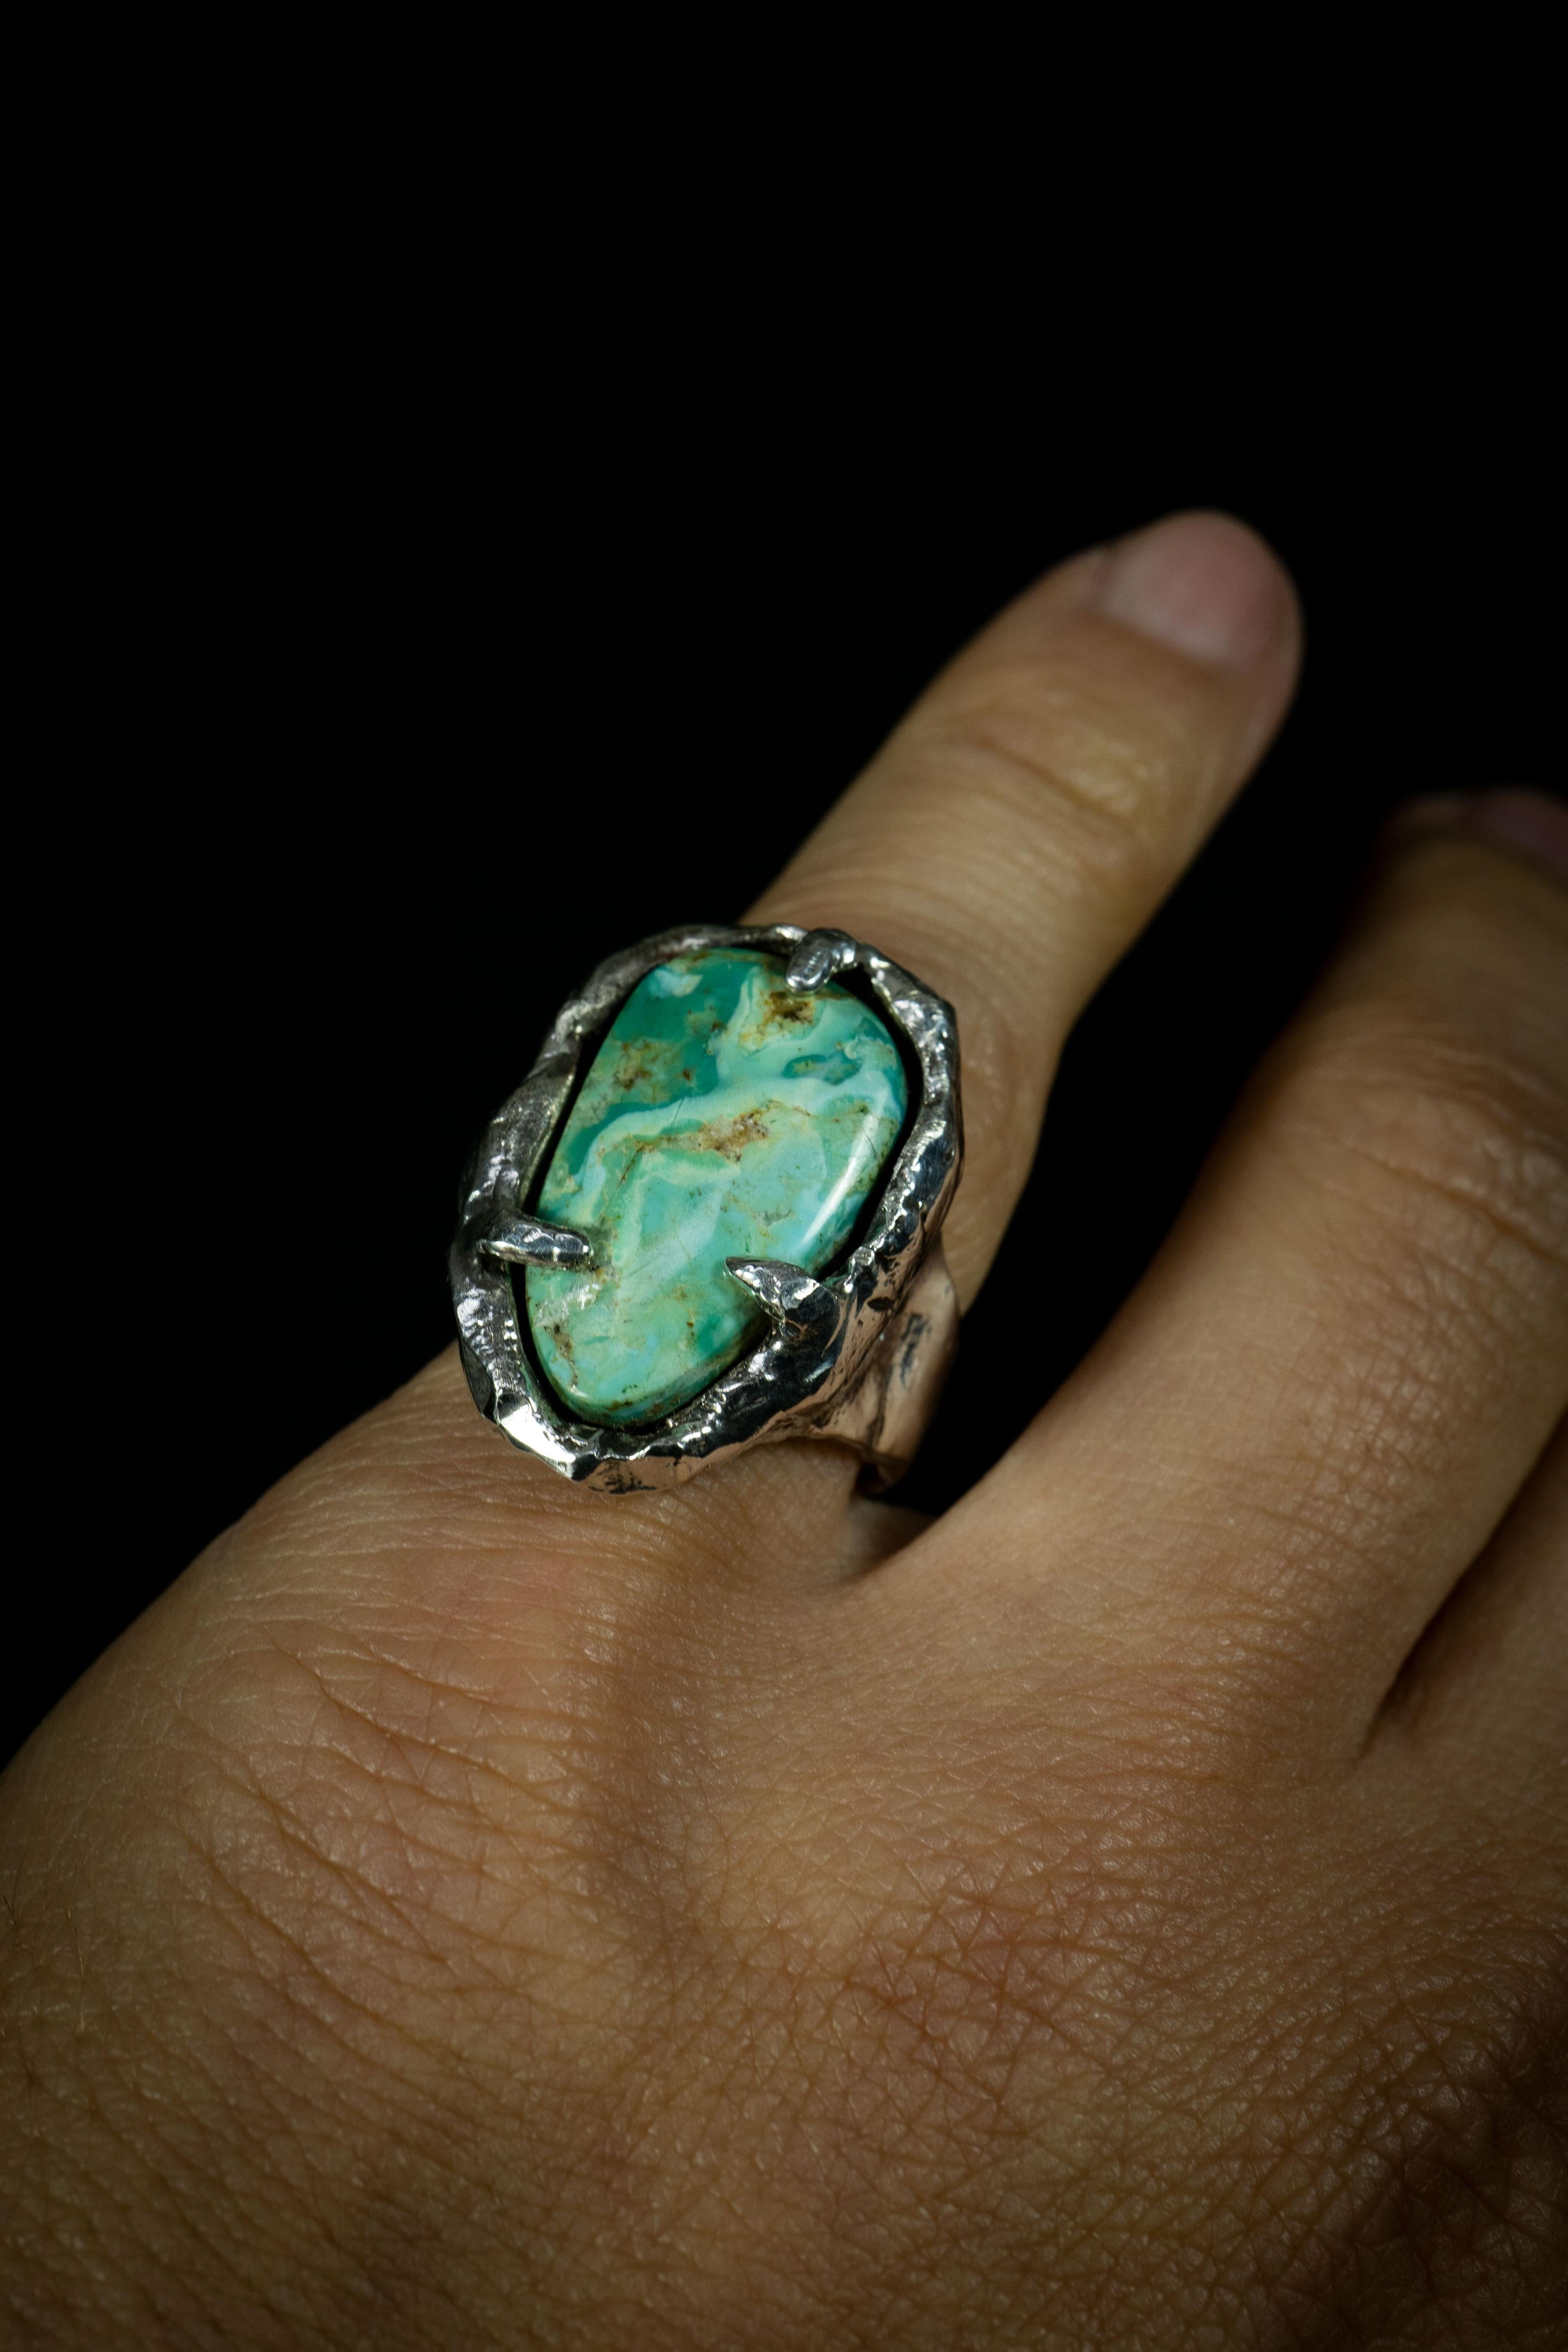 Traveling Dream ist ein außergewöhnlicher handgefertigter Ring von Ken Fury, der aus Sterlingsilber gefertigt und mit einem faszinierenden Baja-Türkis aus Kalifornien verziert ist. Das einzigartige Design des Rings symbolisiert die Reise der